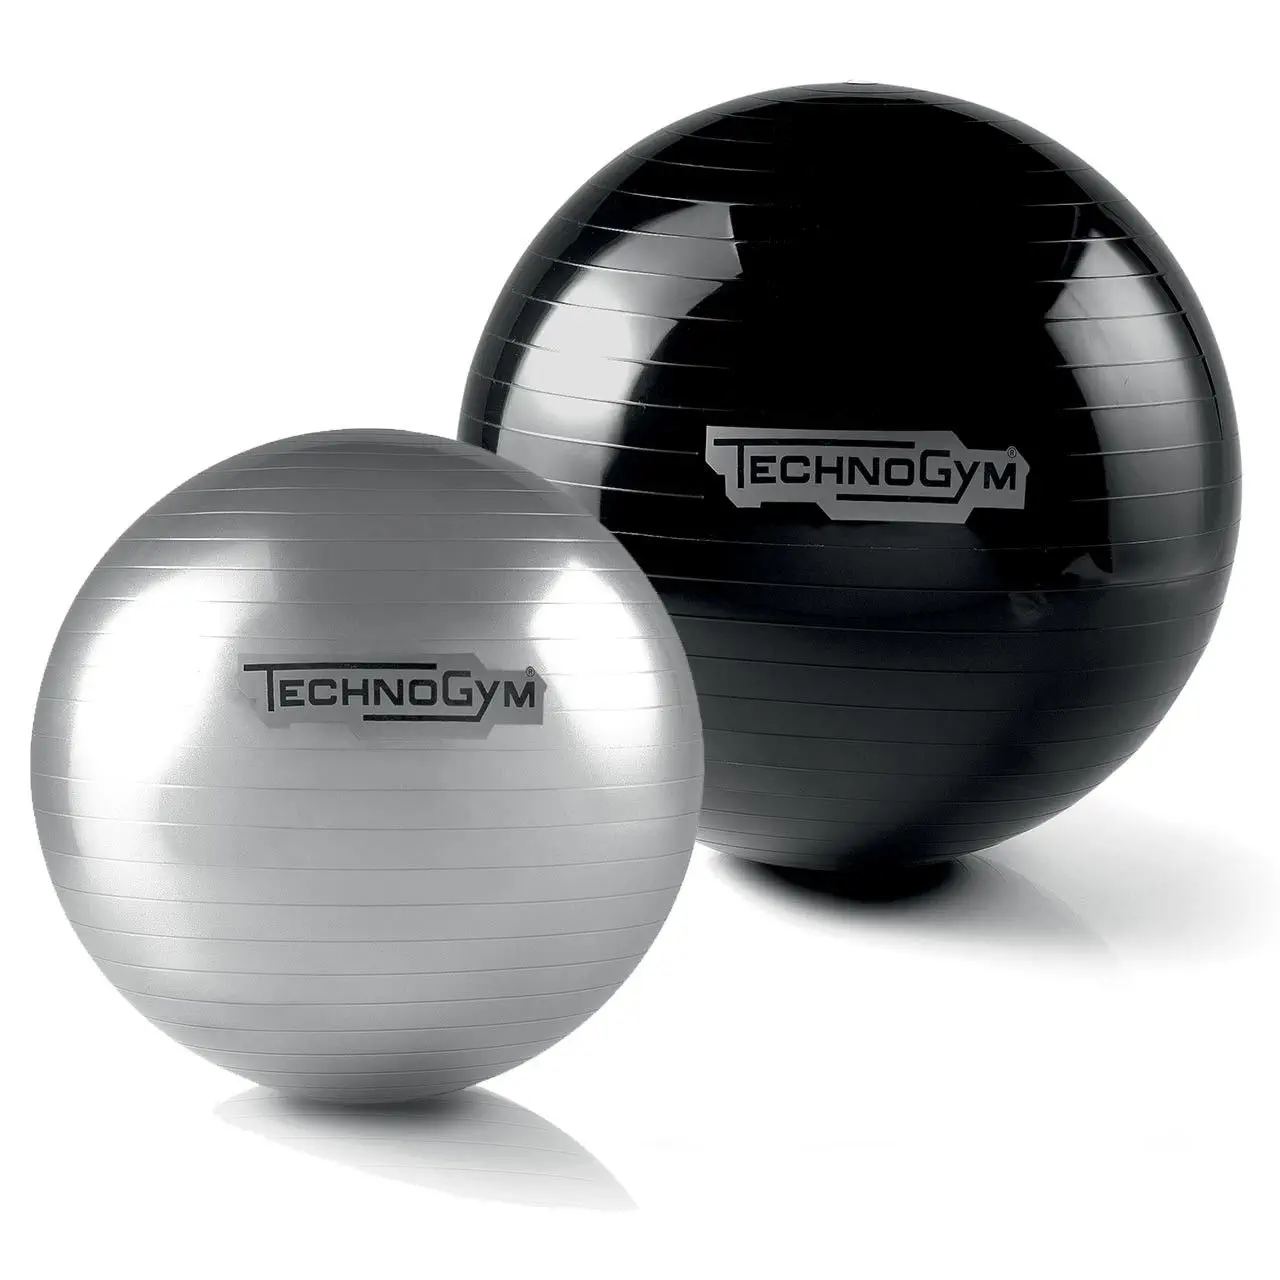 พิลาทิสบอล Large size Pilates ball Wellness Ball™ Training TECHNOGYM